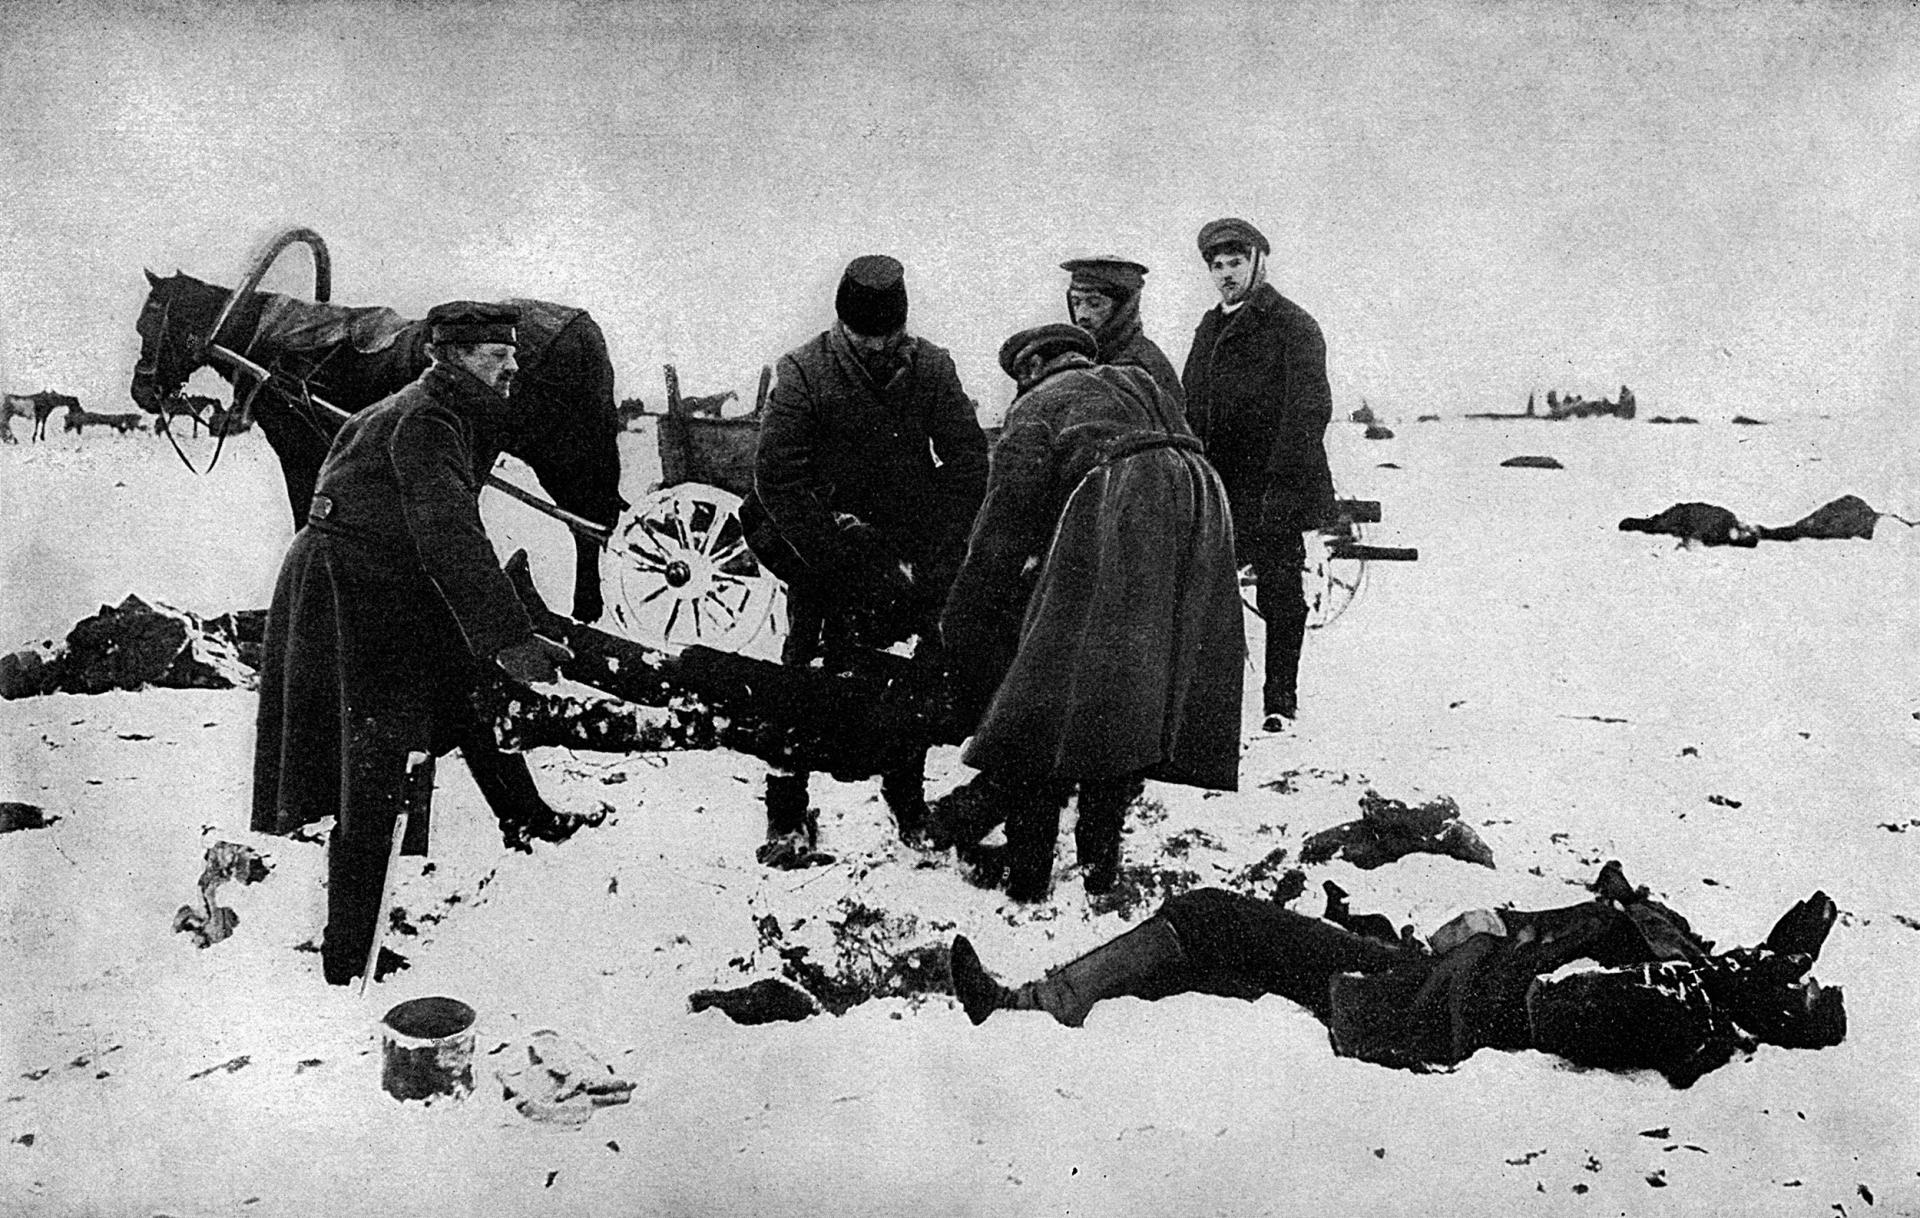 Obete októbrovej revolúcie bývali pochovávané do zmrznutej zeme na neobývaných priestranstvách. Vojenský prevrat, ktorým boľševici uchopili vládu v Rusku, priniesol krajine mnoho utrpenia, ktoré rástlo aj v ďalších rokoch 20. storočia.